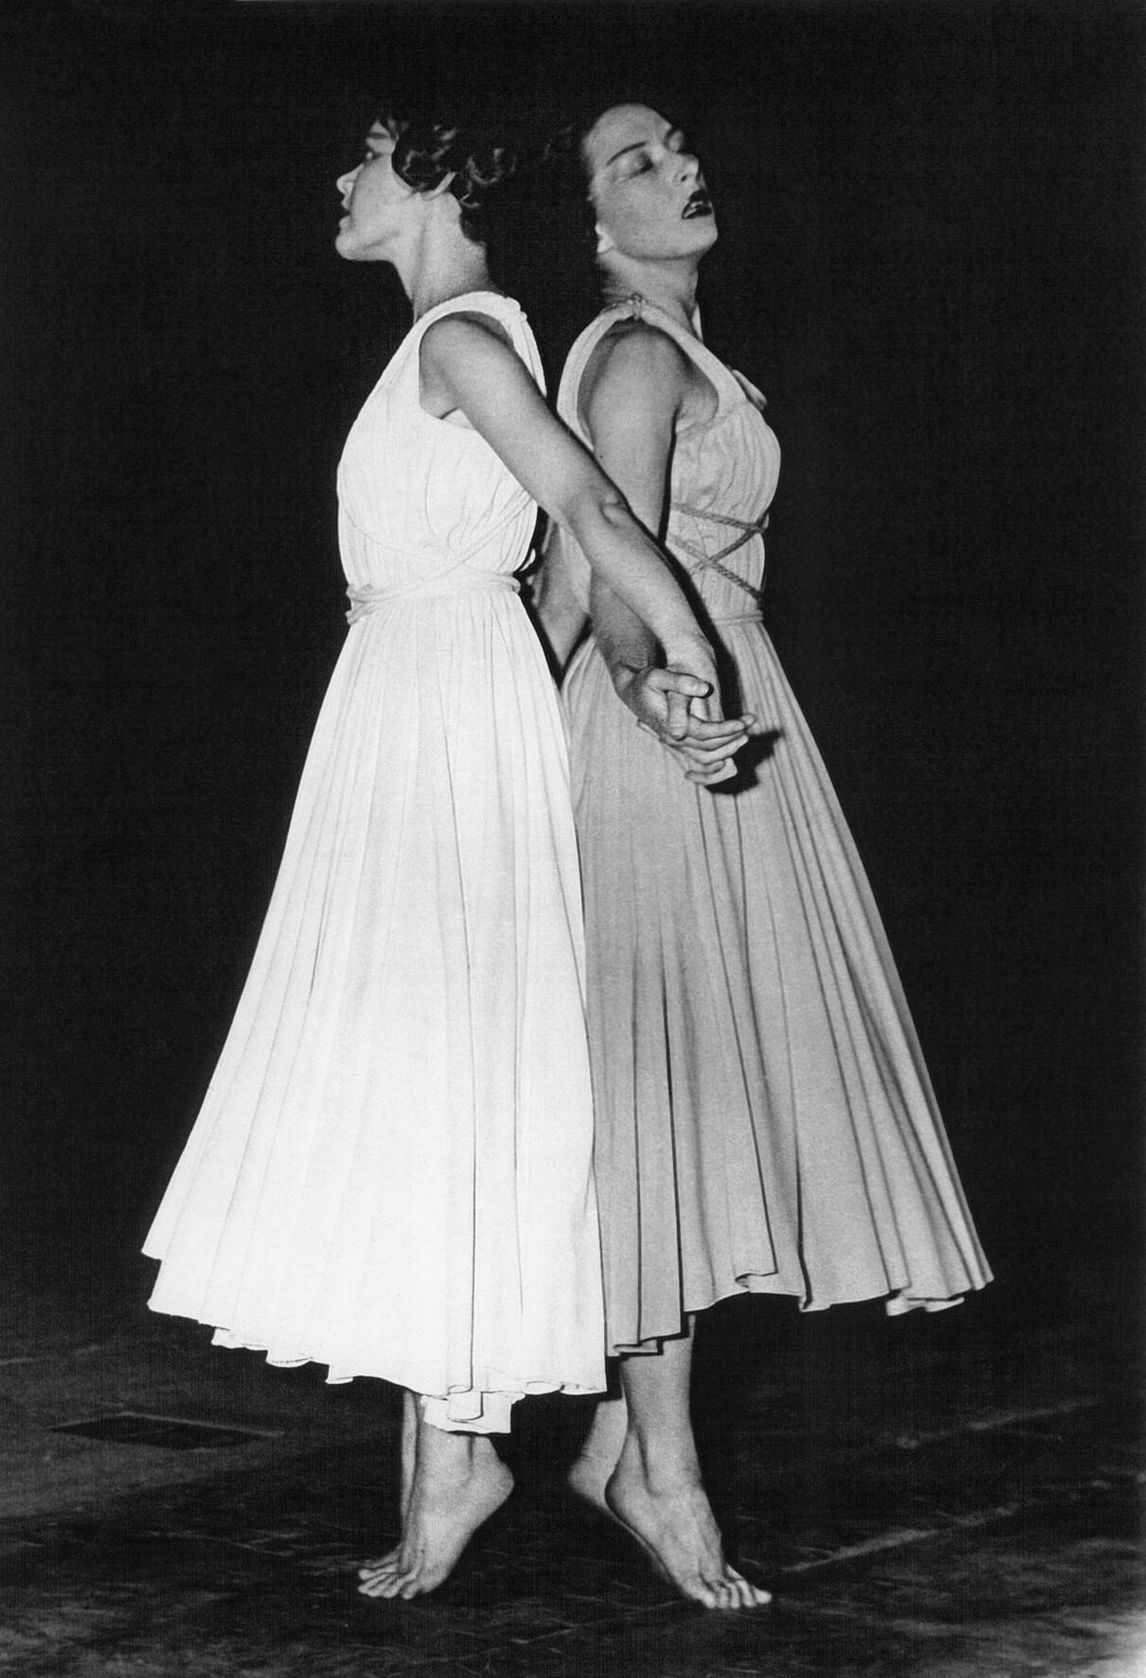 Françoise Sullivan and Penny Kondak in Duality (Dualité), 1949.